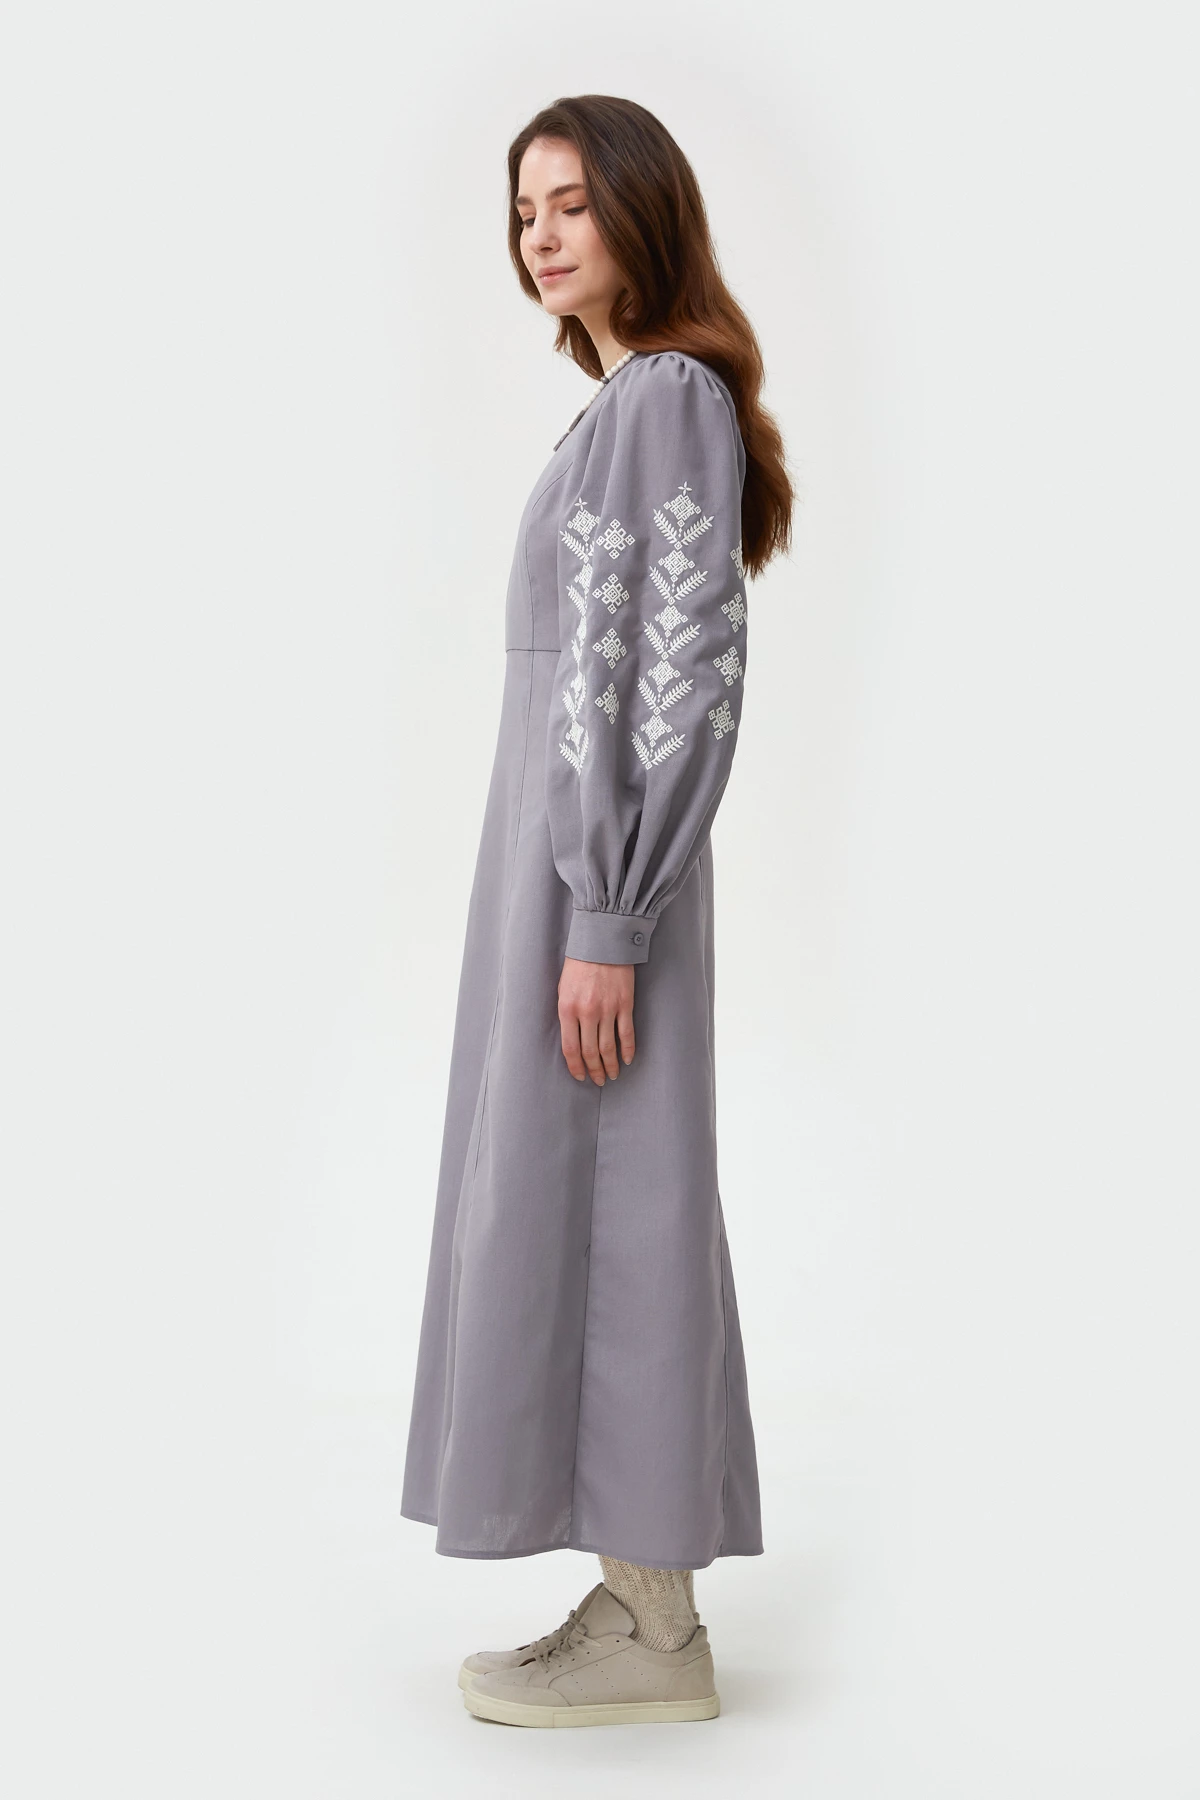 Сіра вишита сукня в орнамент ромби з льоном, фото 2